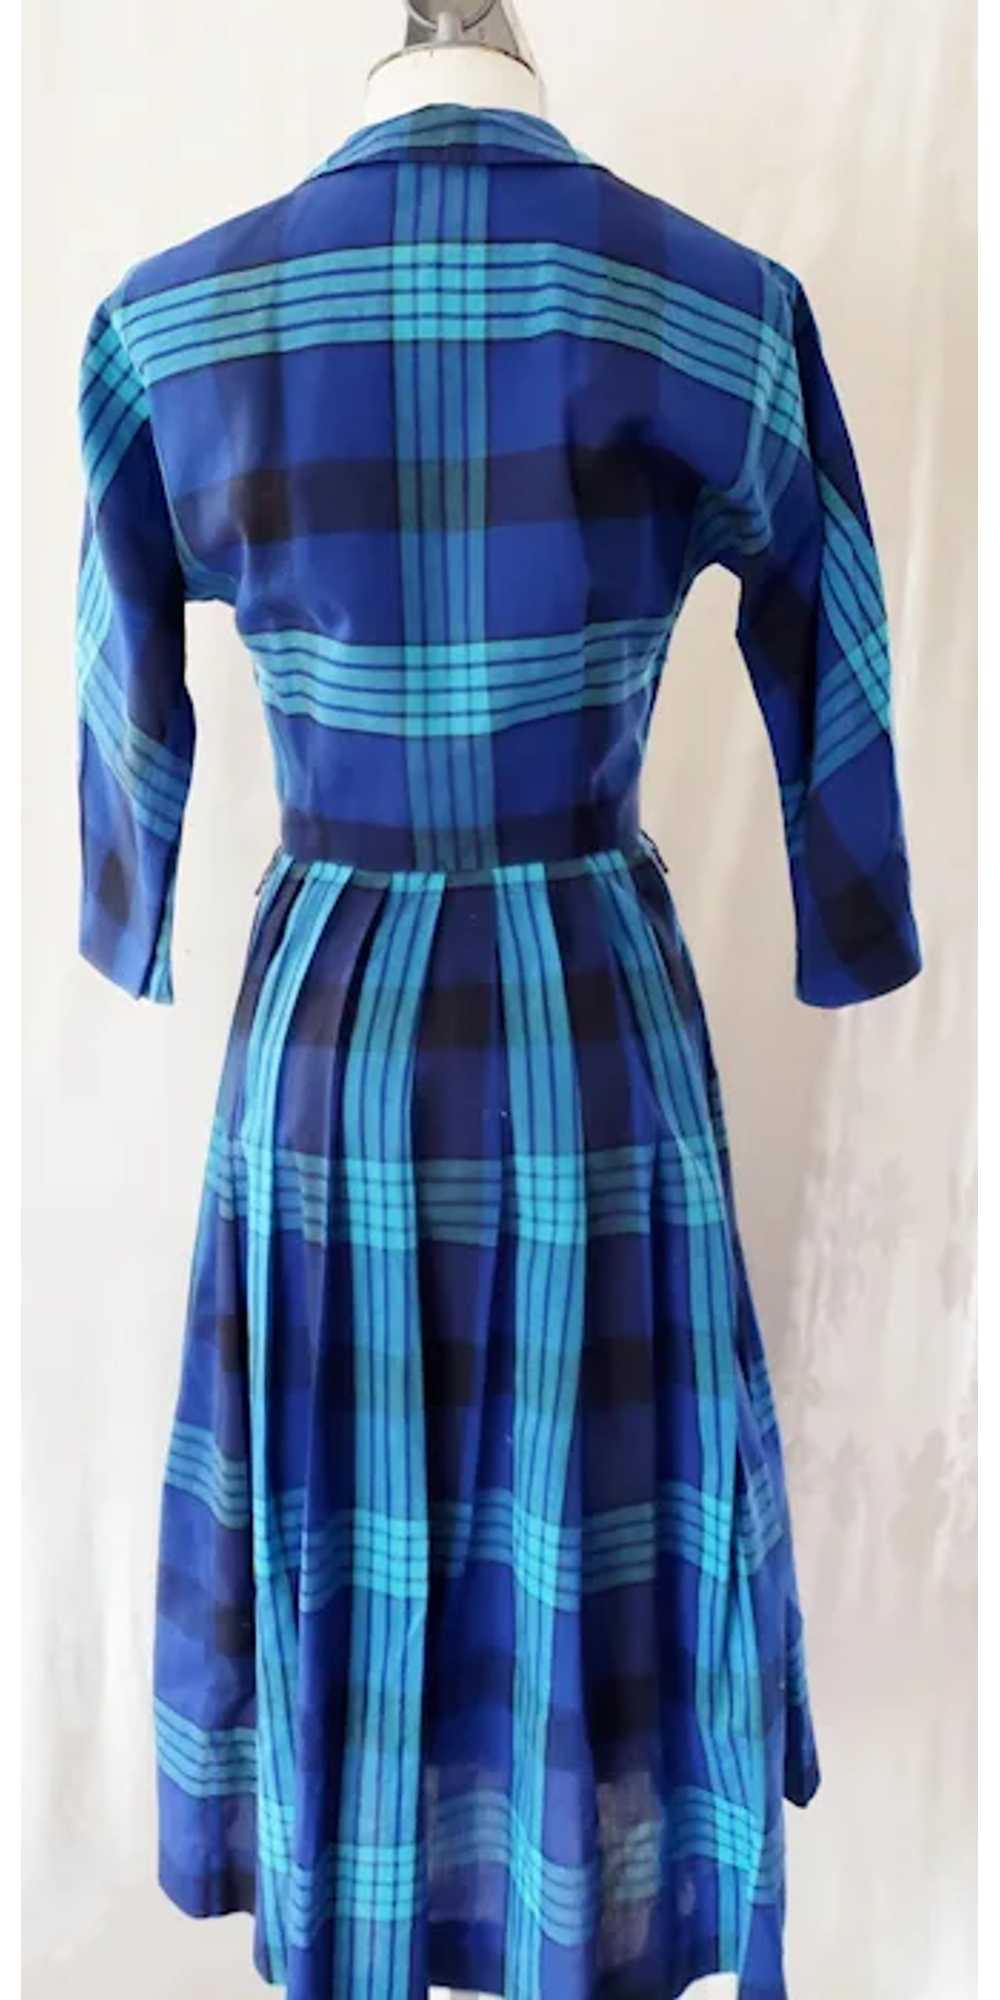 CRISP, BRIGHT Shirtwaist 1960's Dress - image 6